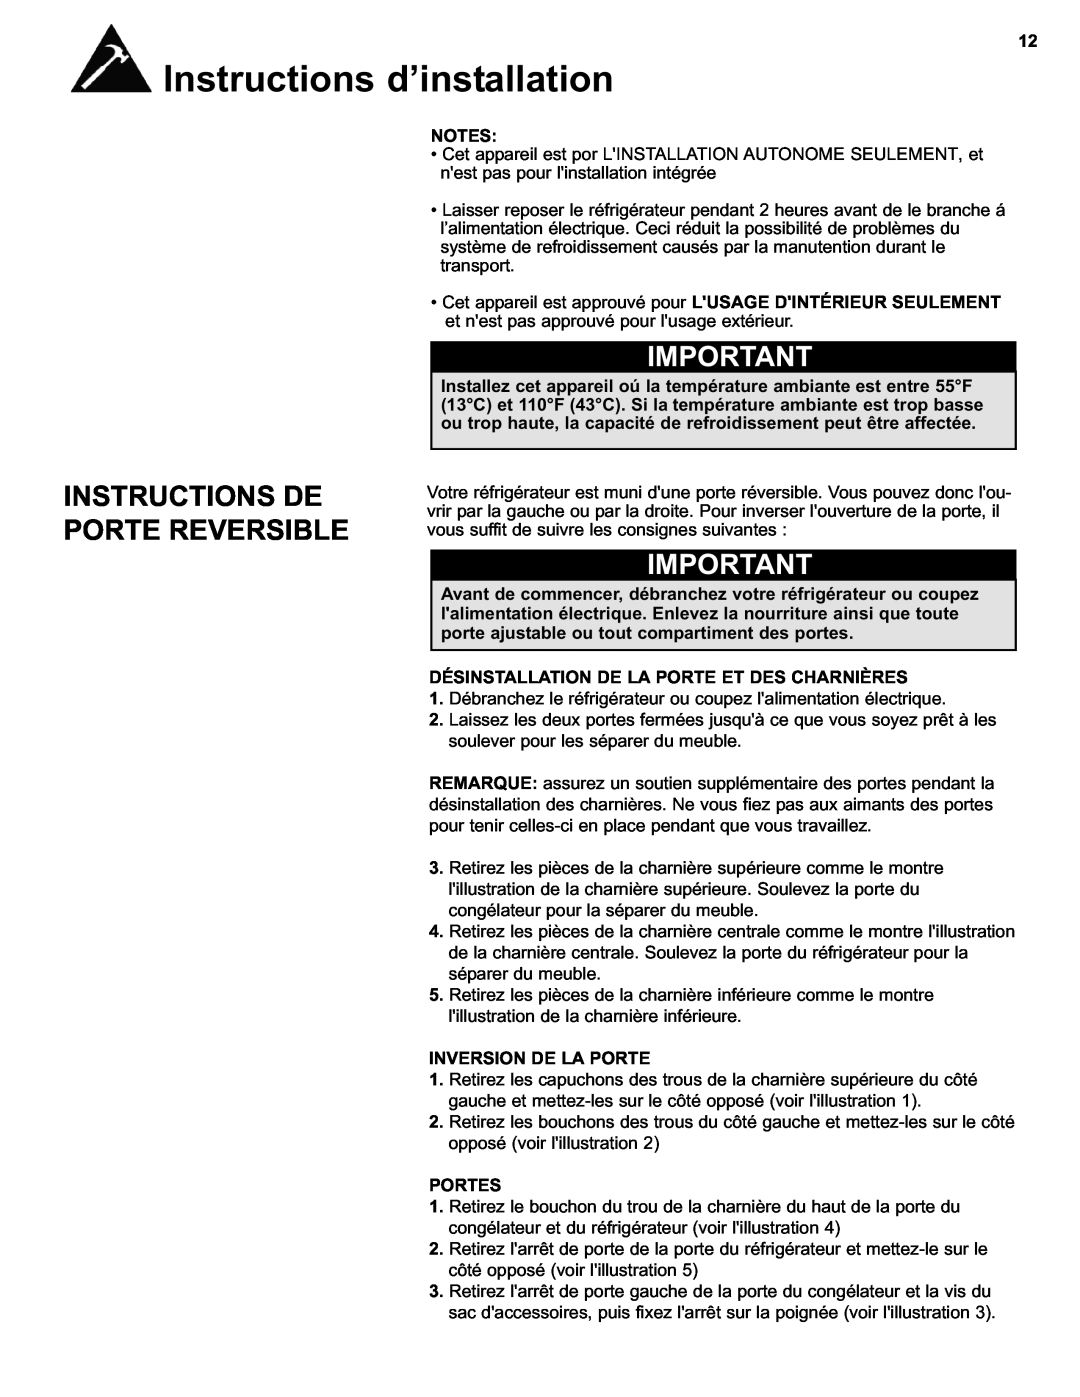 Danby DFF280WDB Instructions De Porte Reversible, Désinstallation De La Porte Et Des Charnières, Inversion De La Porte 